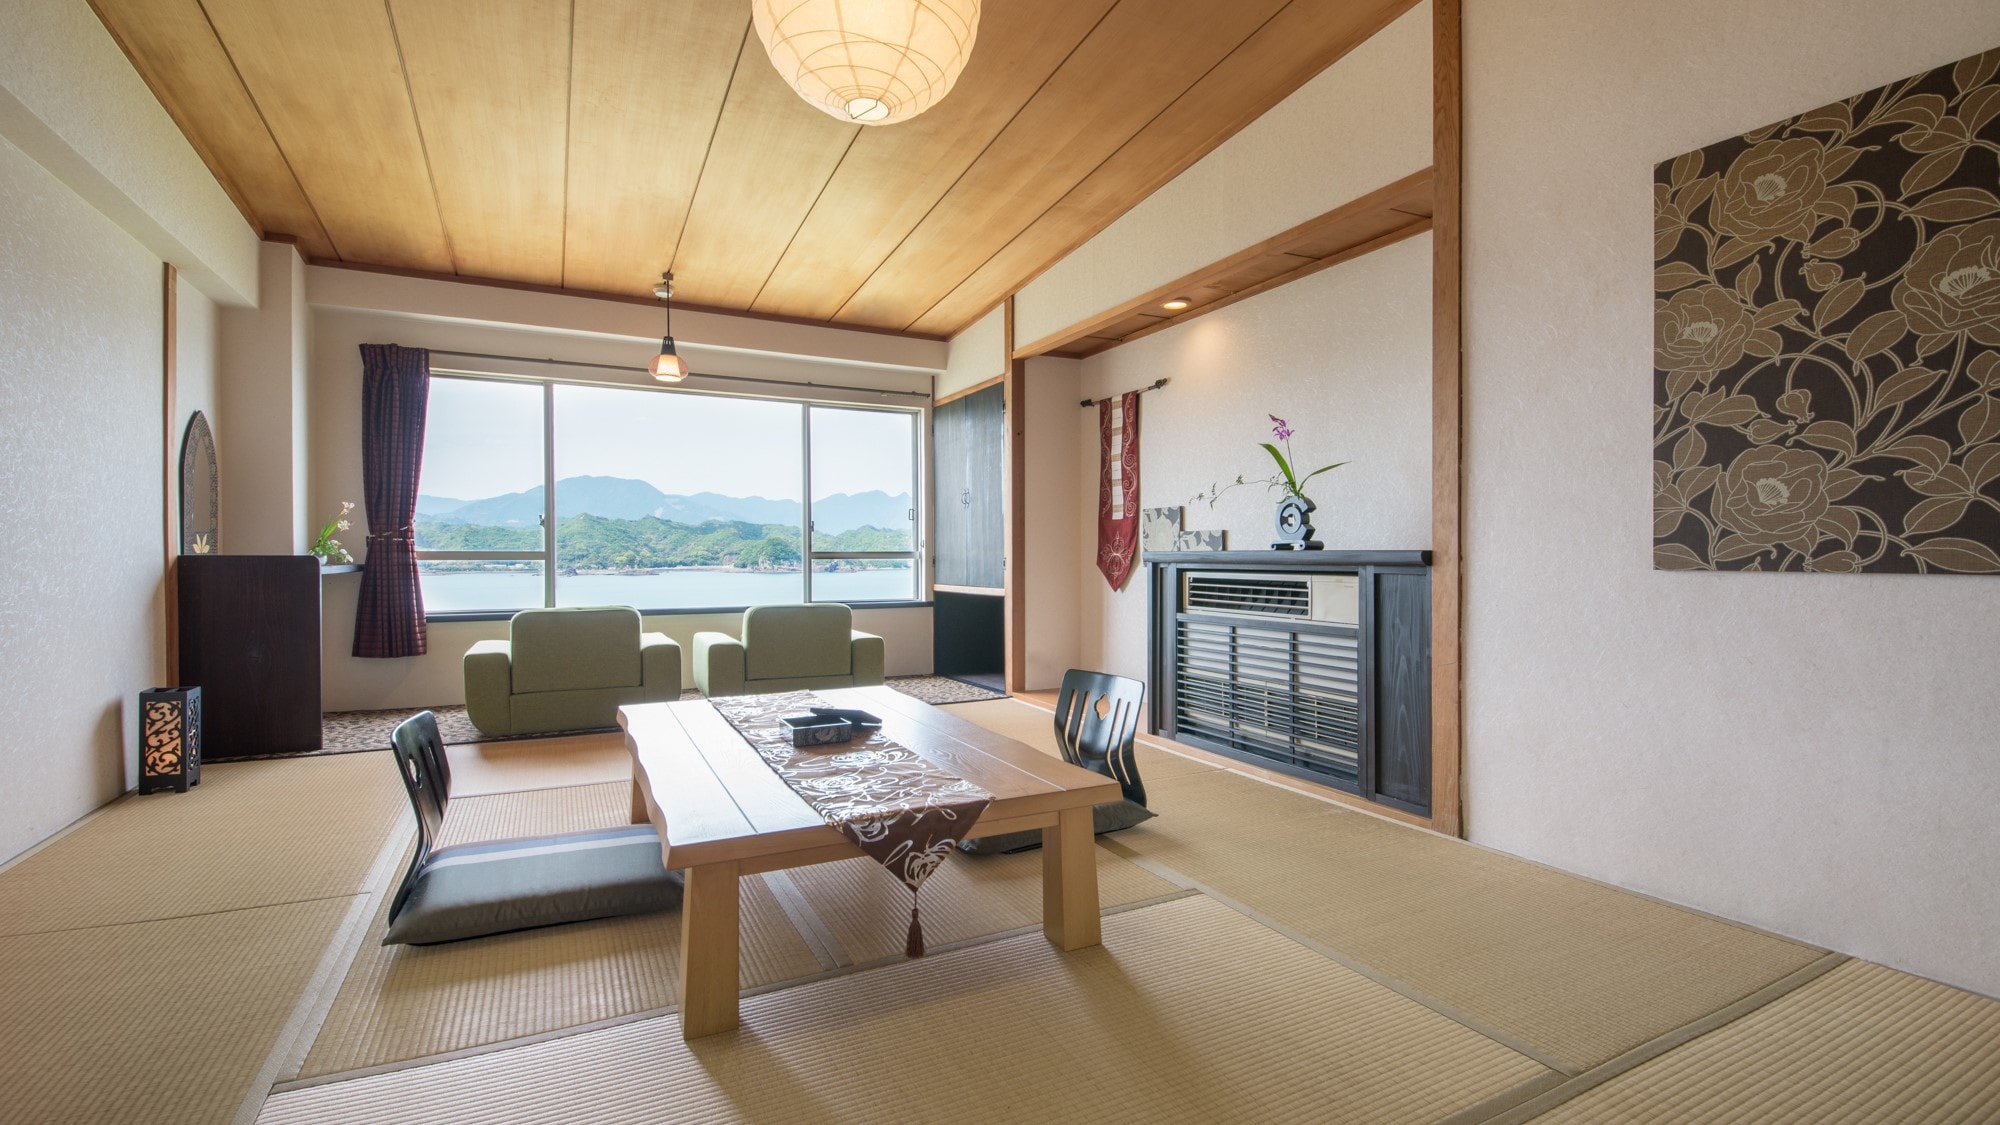 Kaion -kanon- (Standard Japanese-style room 10 tatami mats)